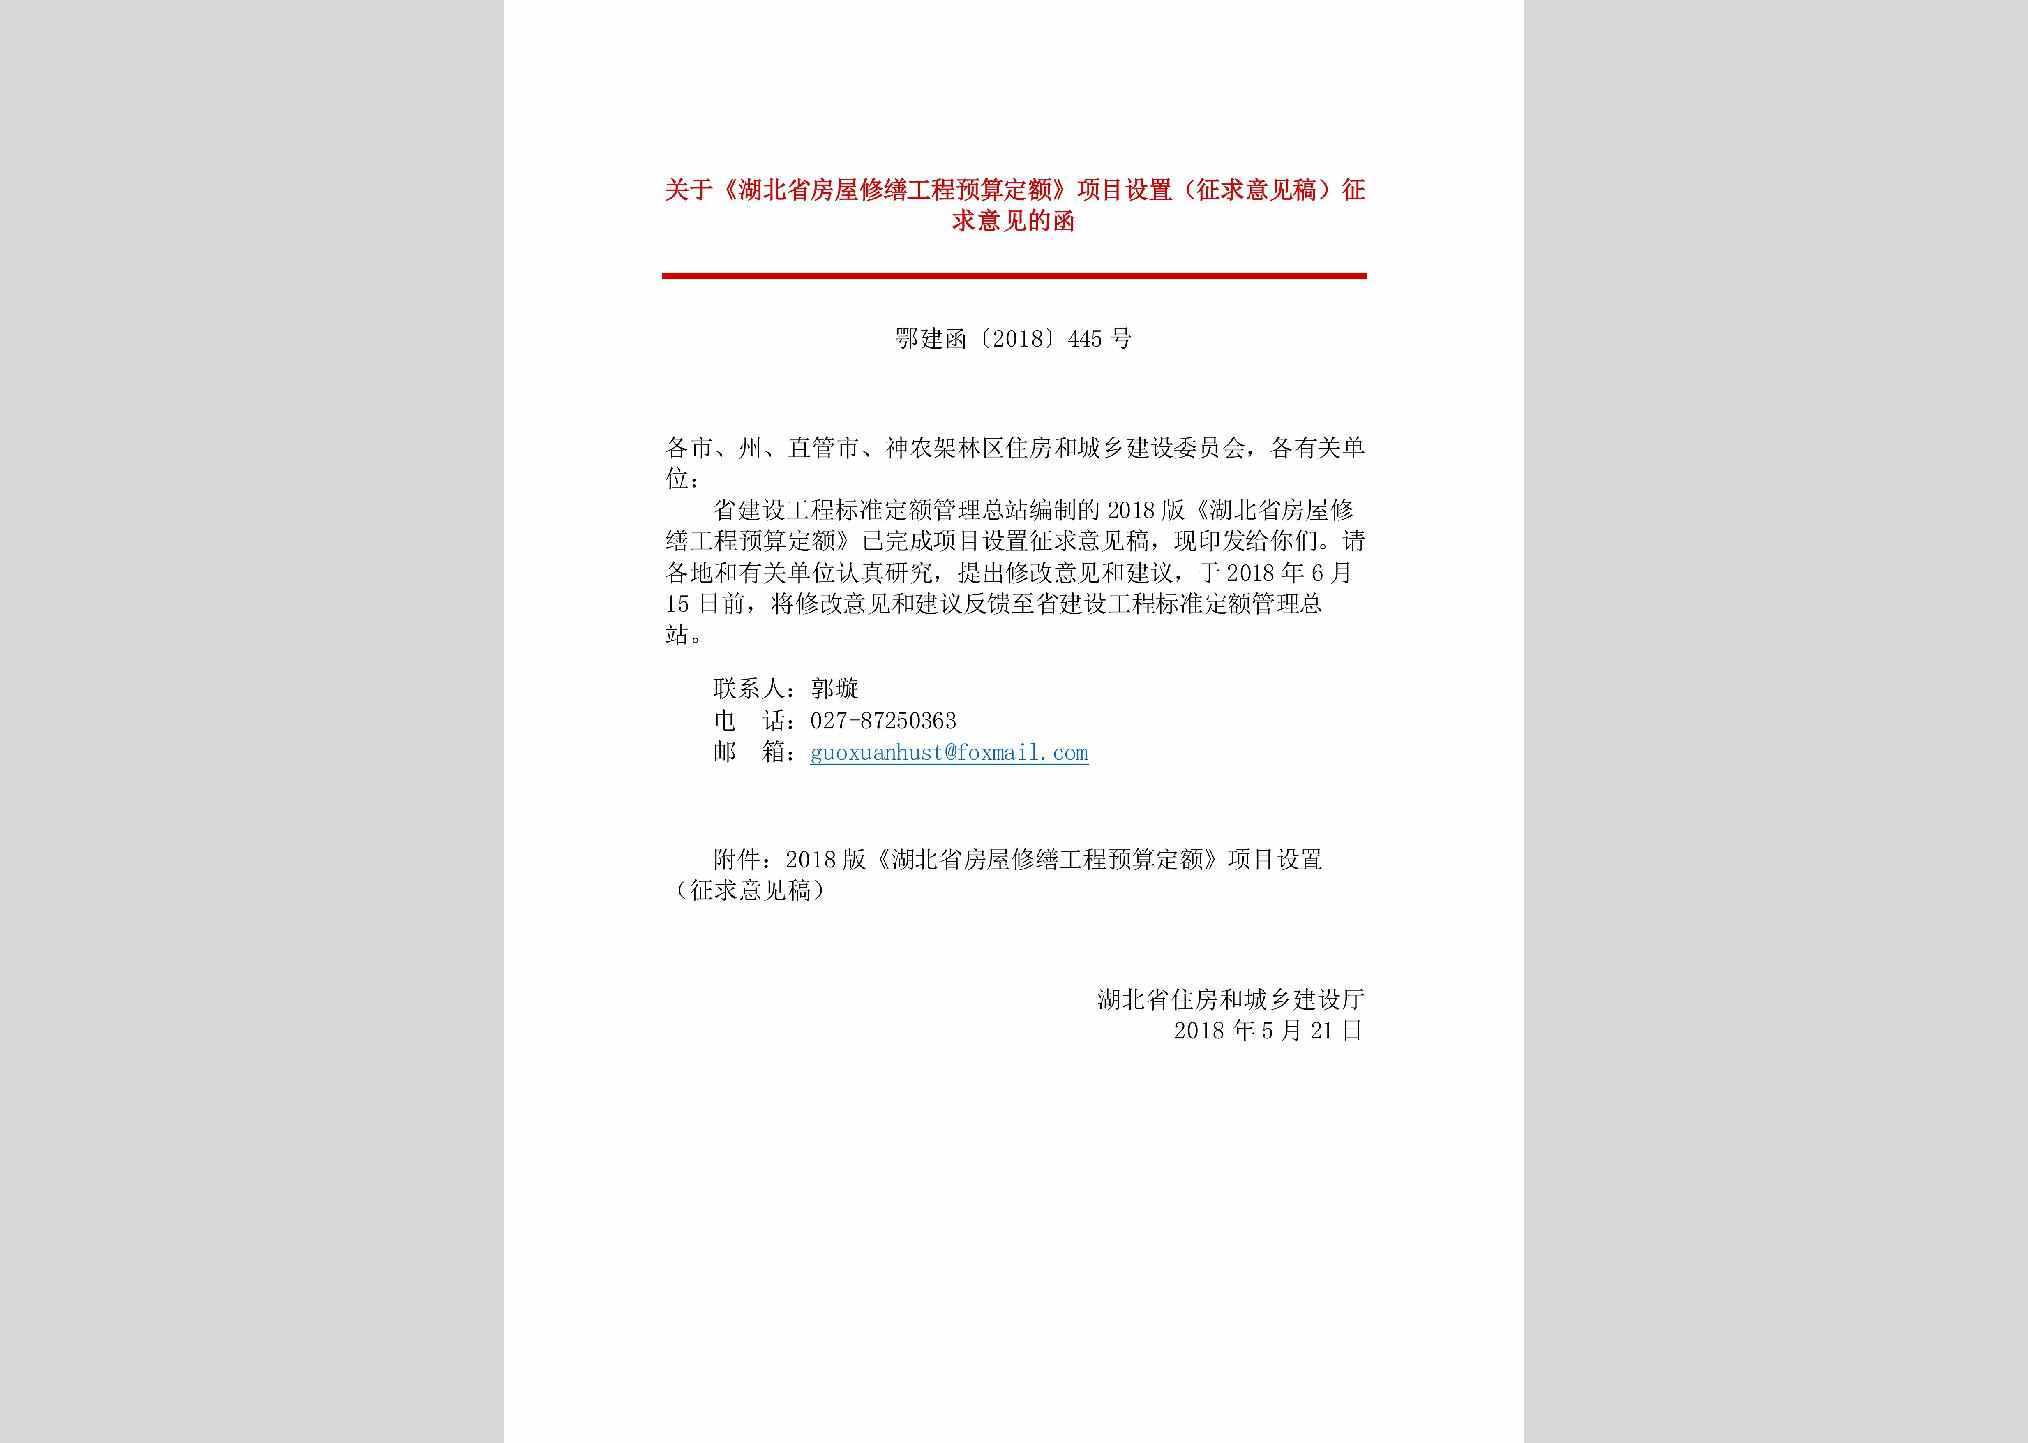 鄂建函[2018]445号：关于《湖北省房屋修缮工程预算定额》项目设置（征求意见稿）征求意见的函